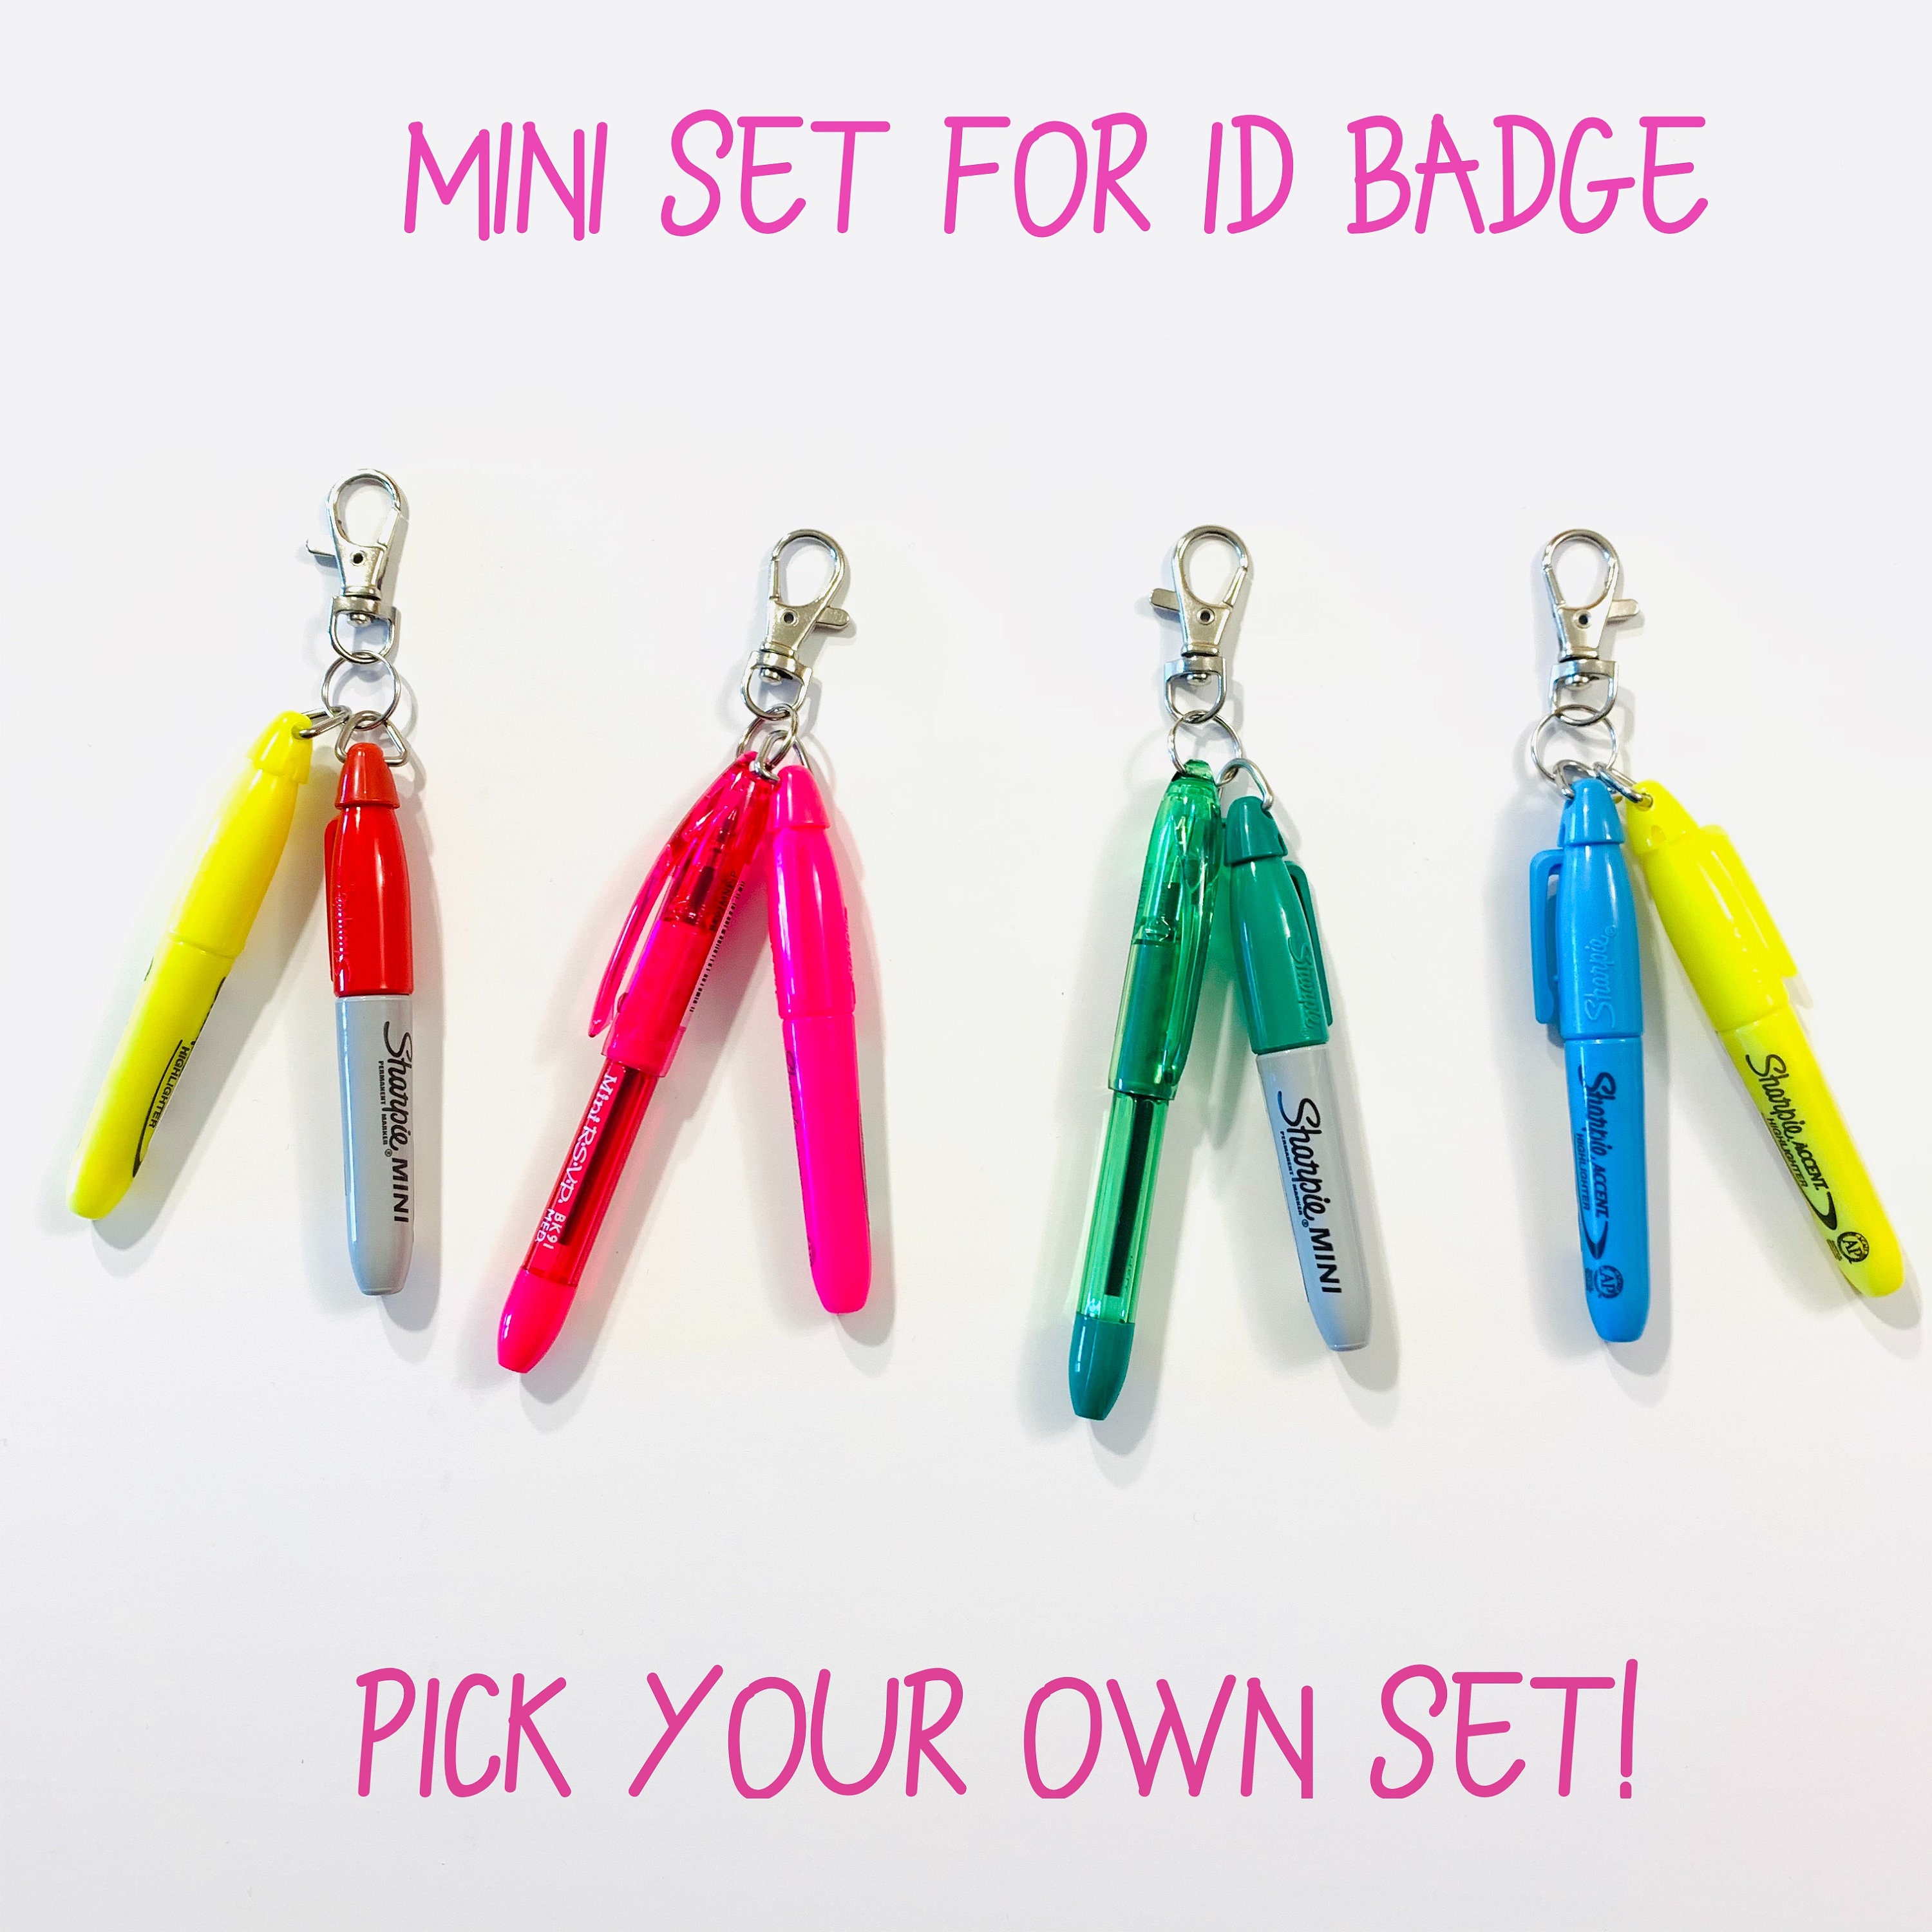 Mini Set for ID Badge/ Mini Pen/ Mini Sharpie/ Mini Highlighter